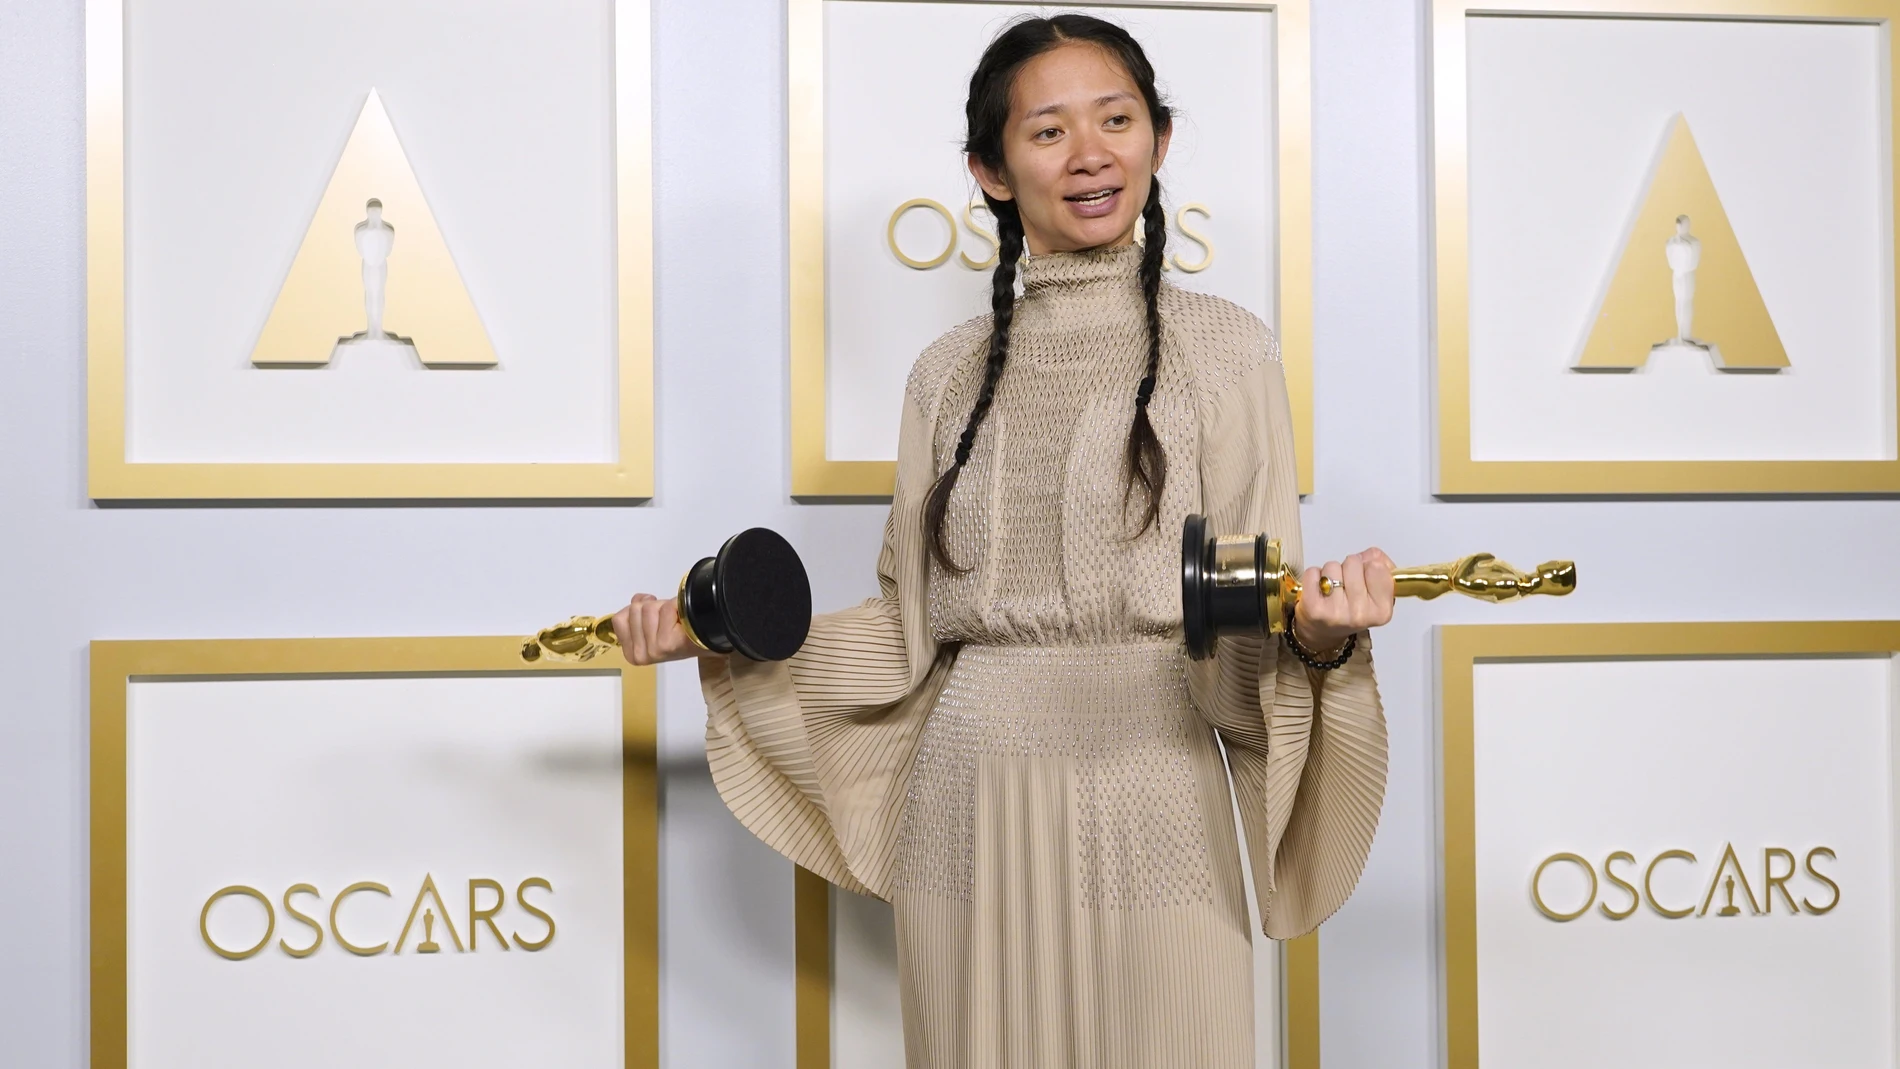 La directora Chloé Zhao ganó el Oscar por «Nomadland» y dio el salto a los superhéroes